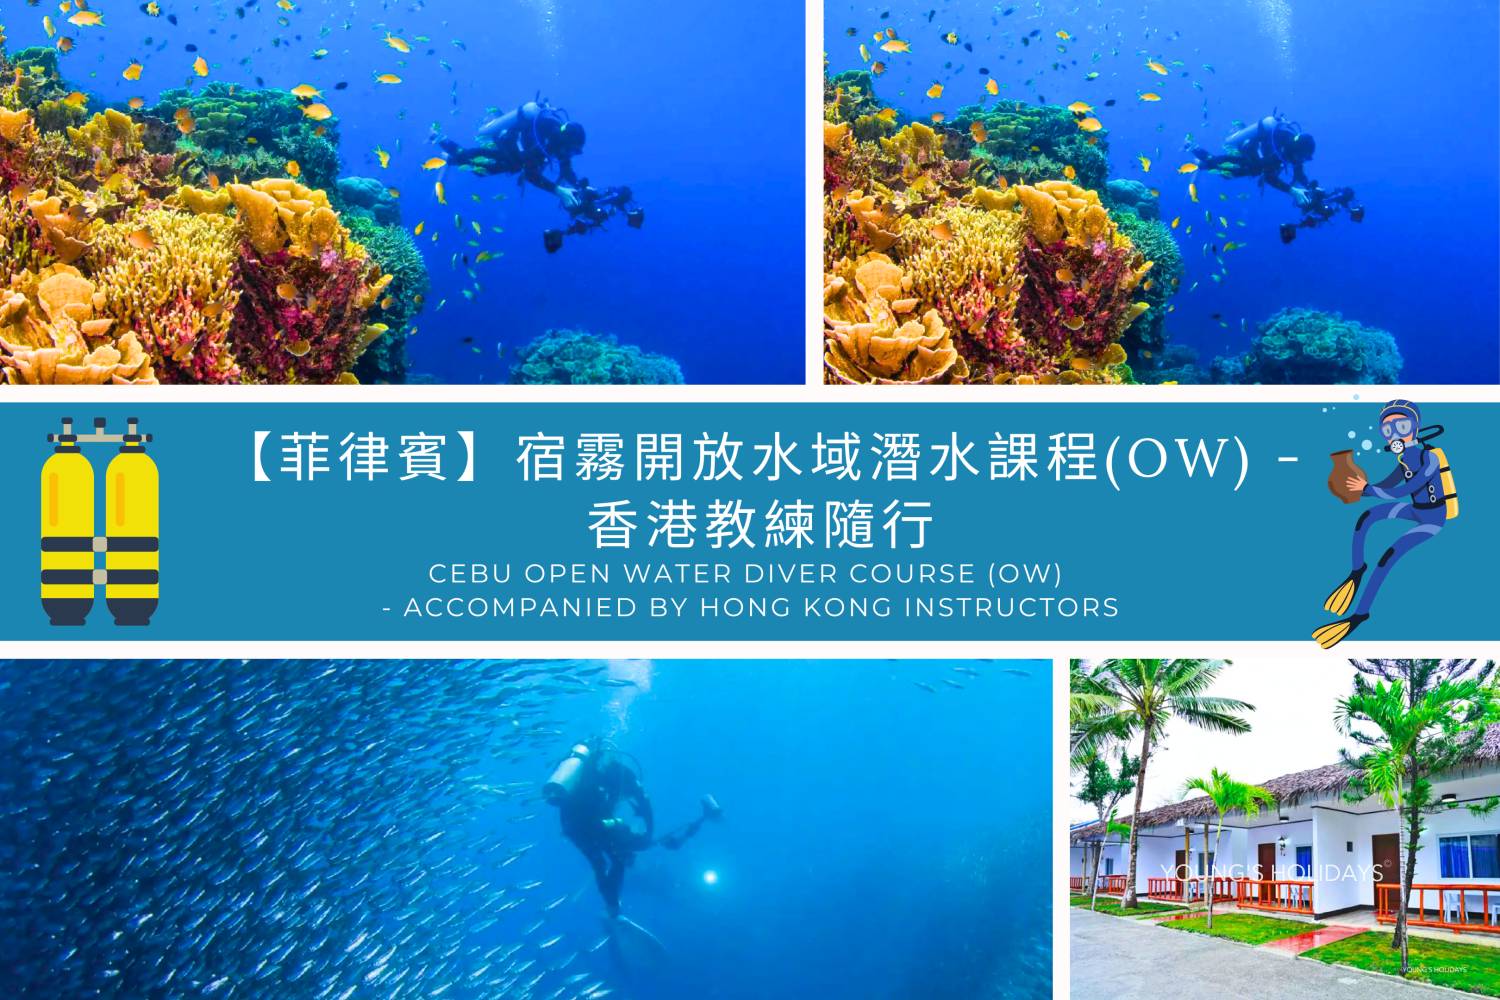 【菲律賓】宿霧開放水域潛水員課程(OW) -香港教練隨行